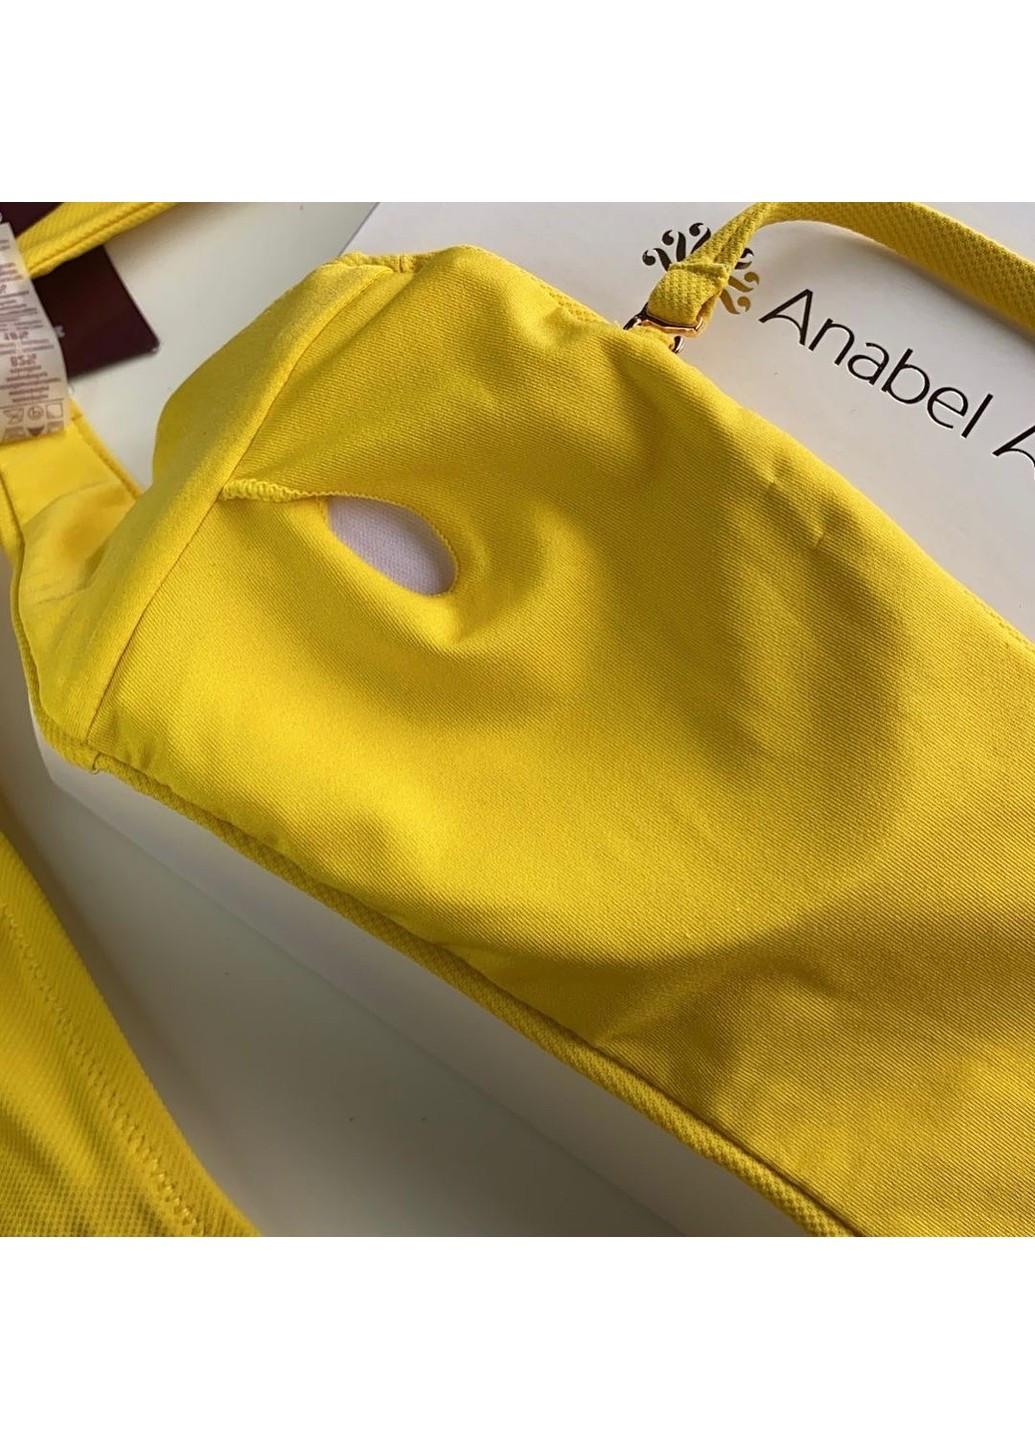 Жовтий літній купальник бандо 994-045/994-233 жовтий з плавками на зав'язках Anabel Arto